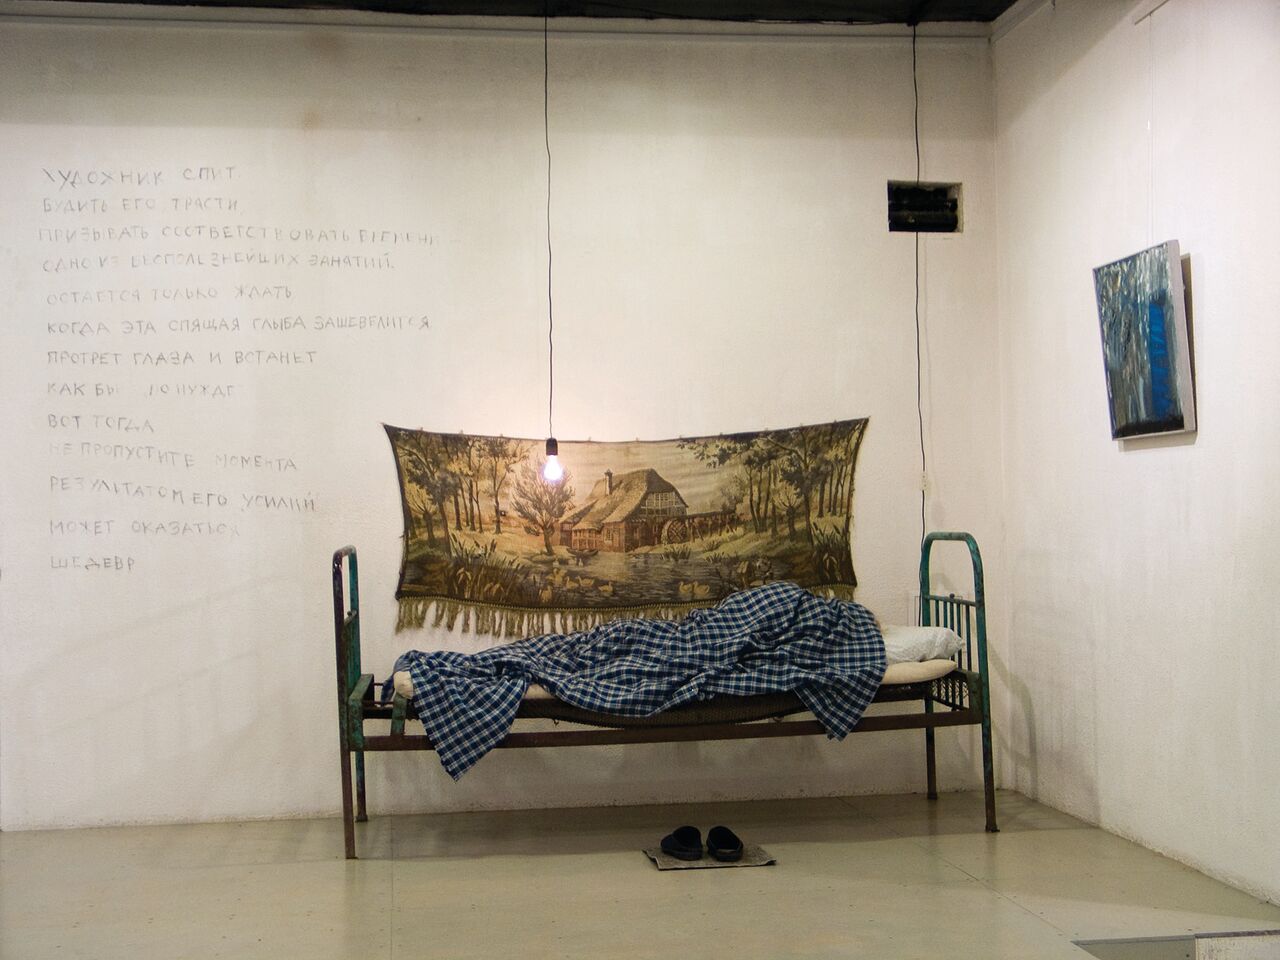 Елена и Виктор Воробьёвы представят инсталляцию  «Художник спит» на 57-й  Венецианской биеннале